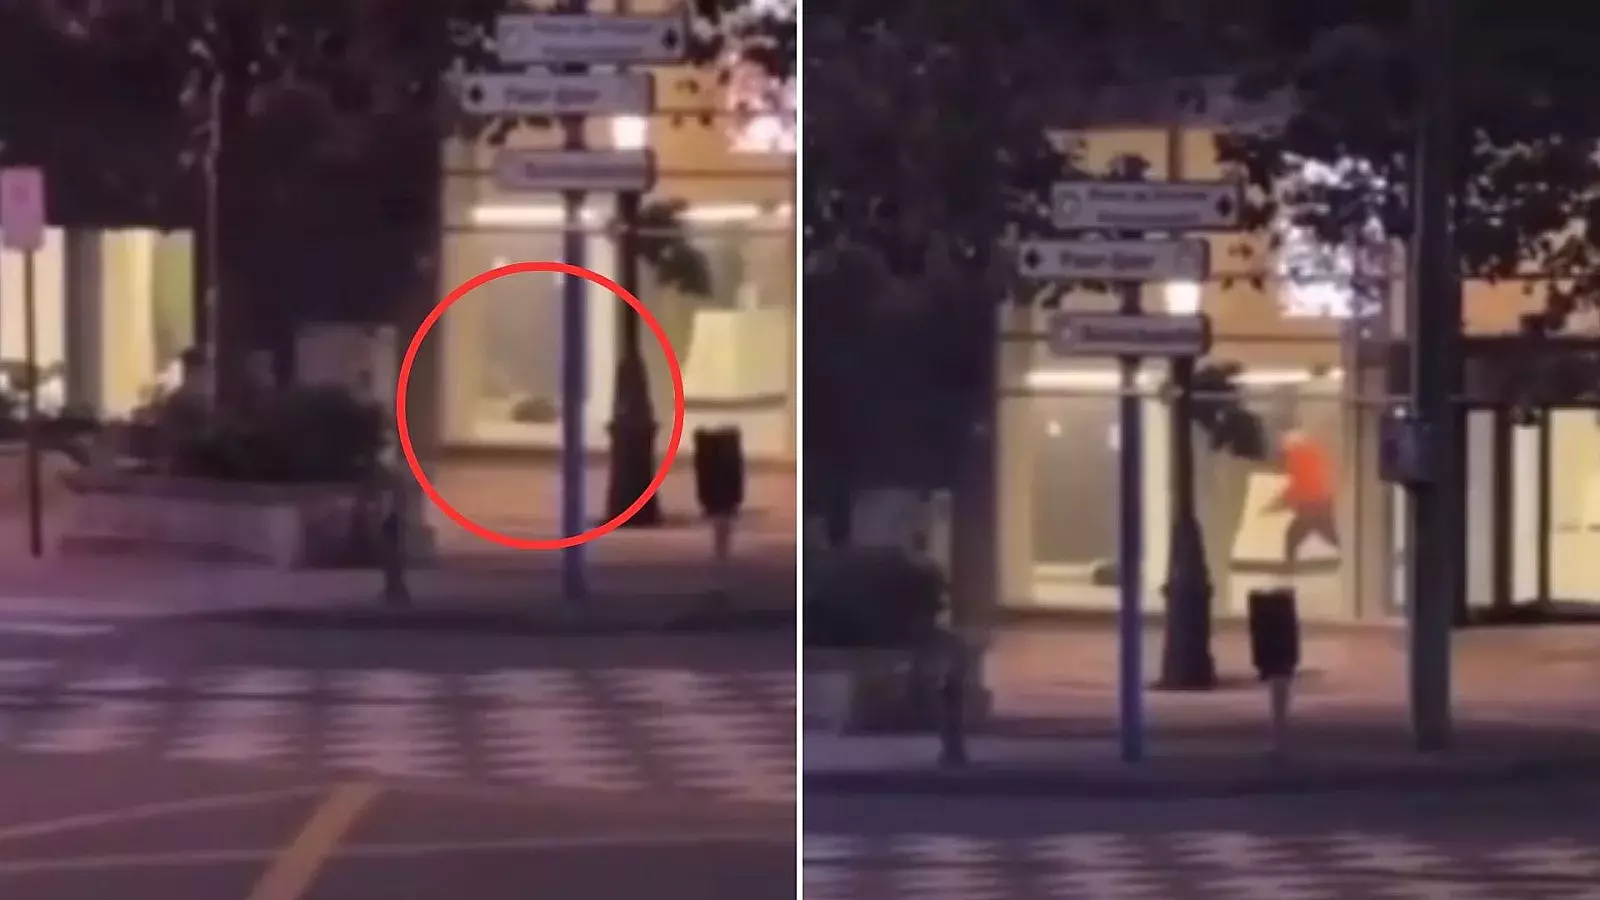 VIDEO: Ataque terrorista en Bruselas deja dos víctimas